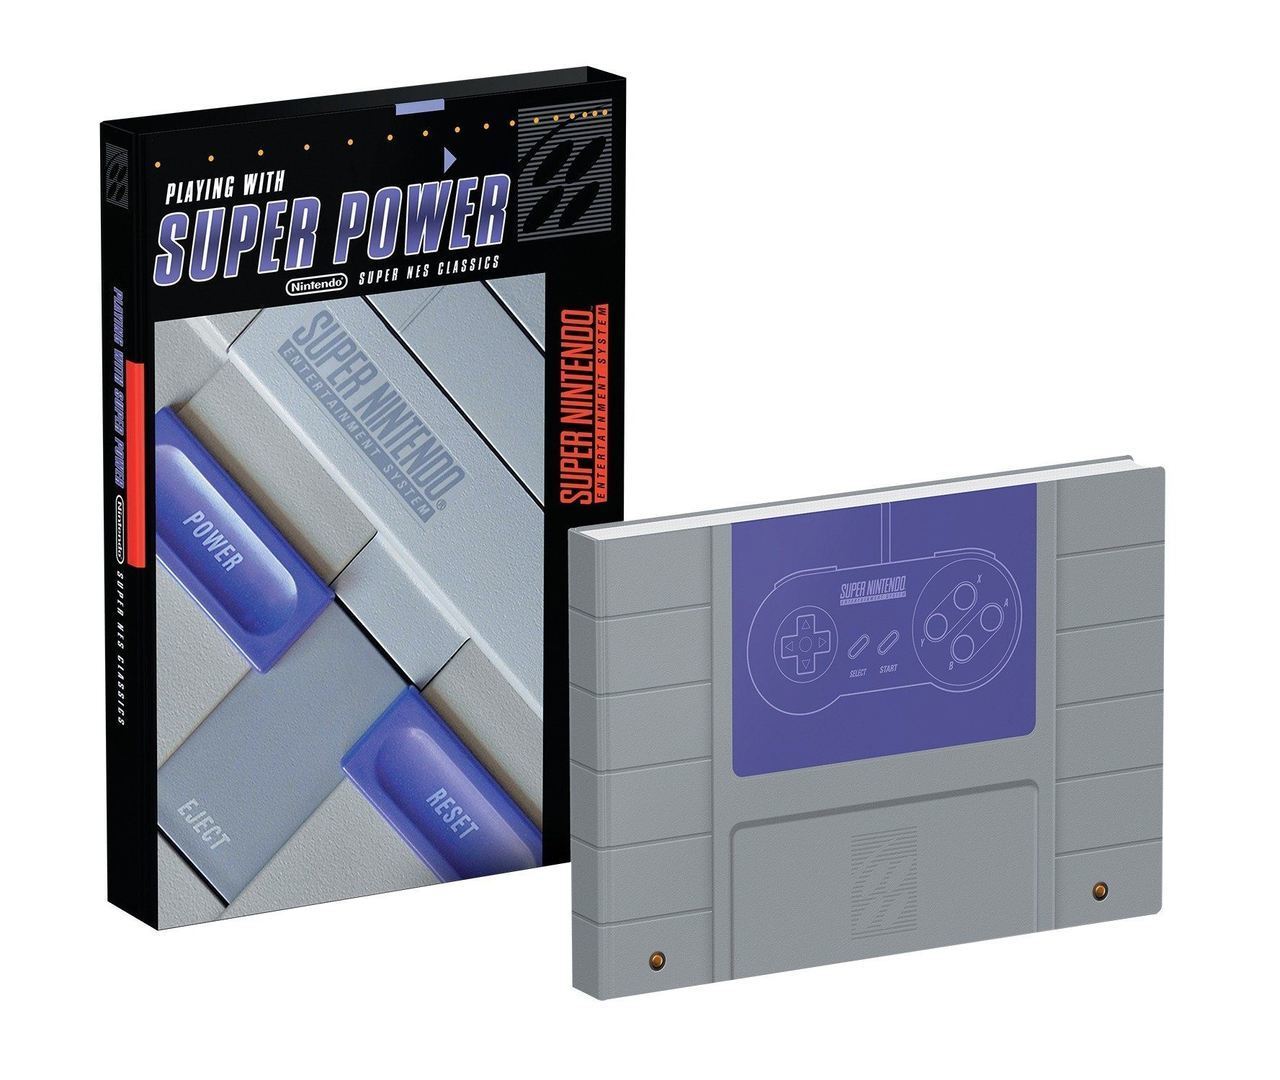 J2Games.com | Playing with Super Power: Nintendo Super NES Classics Hardcover (Books) (Brand New).